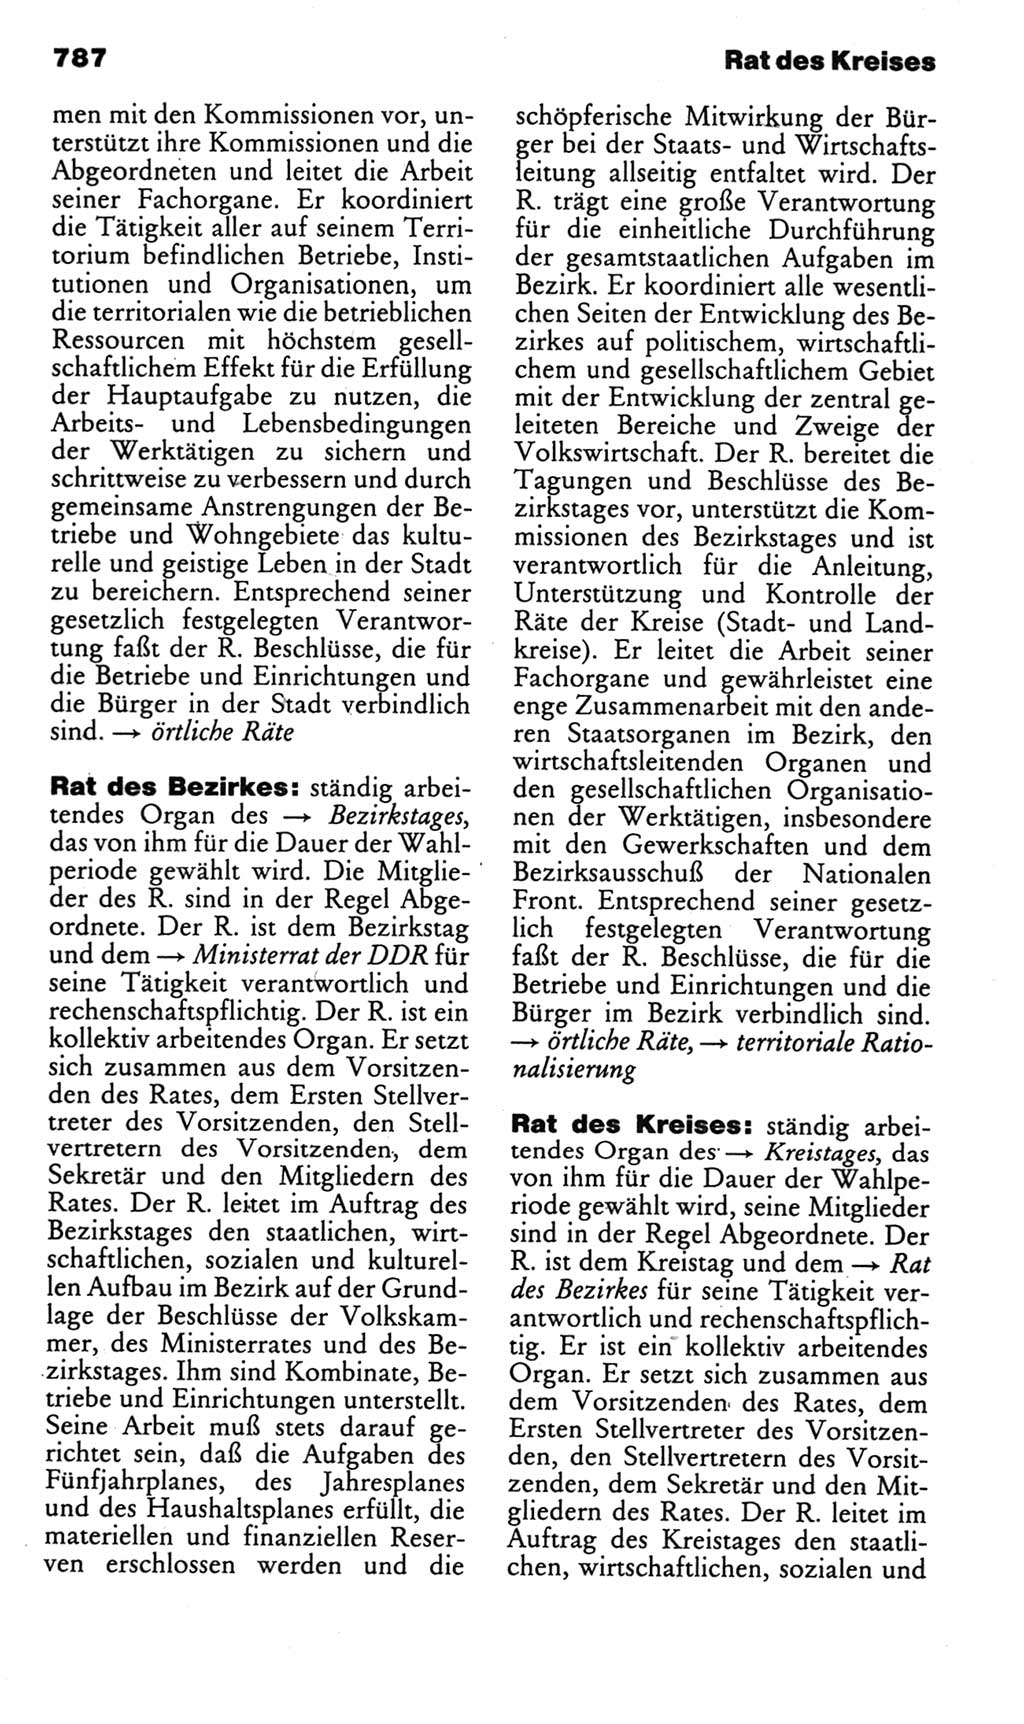 Kleines politisches Wörterbuch [Deutsche Demokratische Republik (DDR)] 1985, Seite 787 (Kl. pol. Wb. DDR 1985, S. 787)